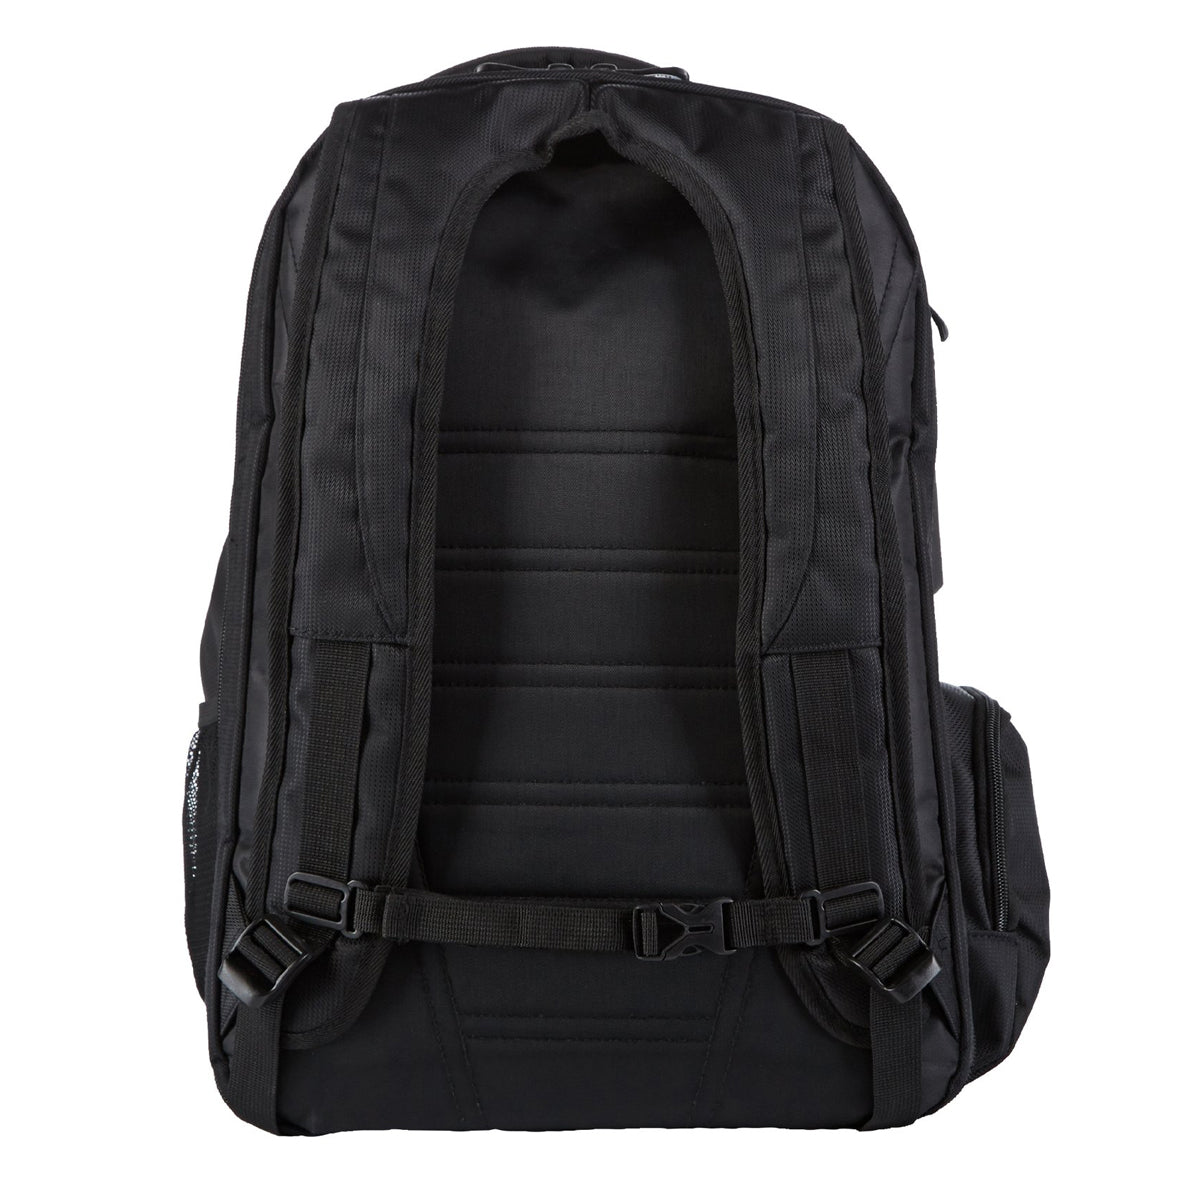 Equifit Ringside Backpack